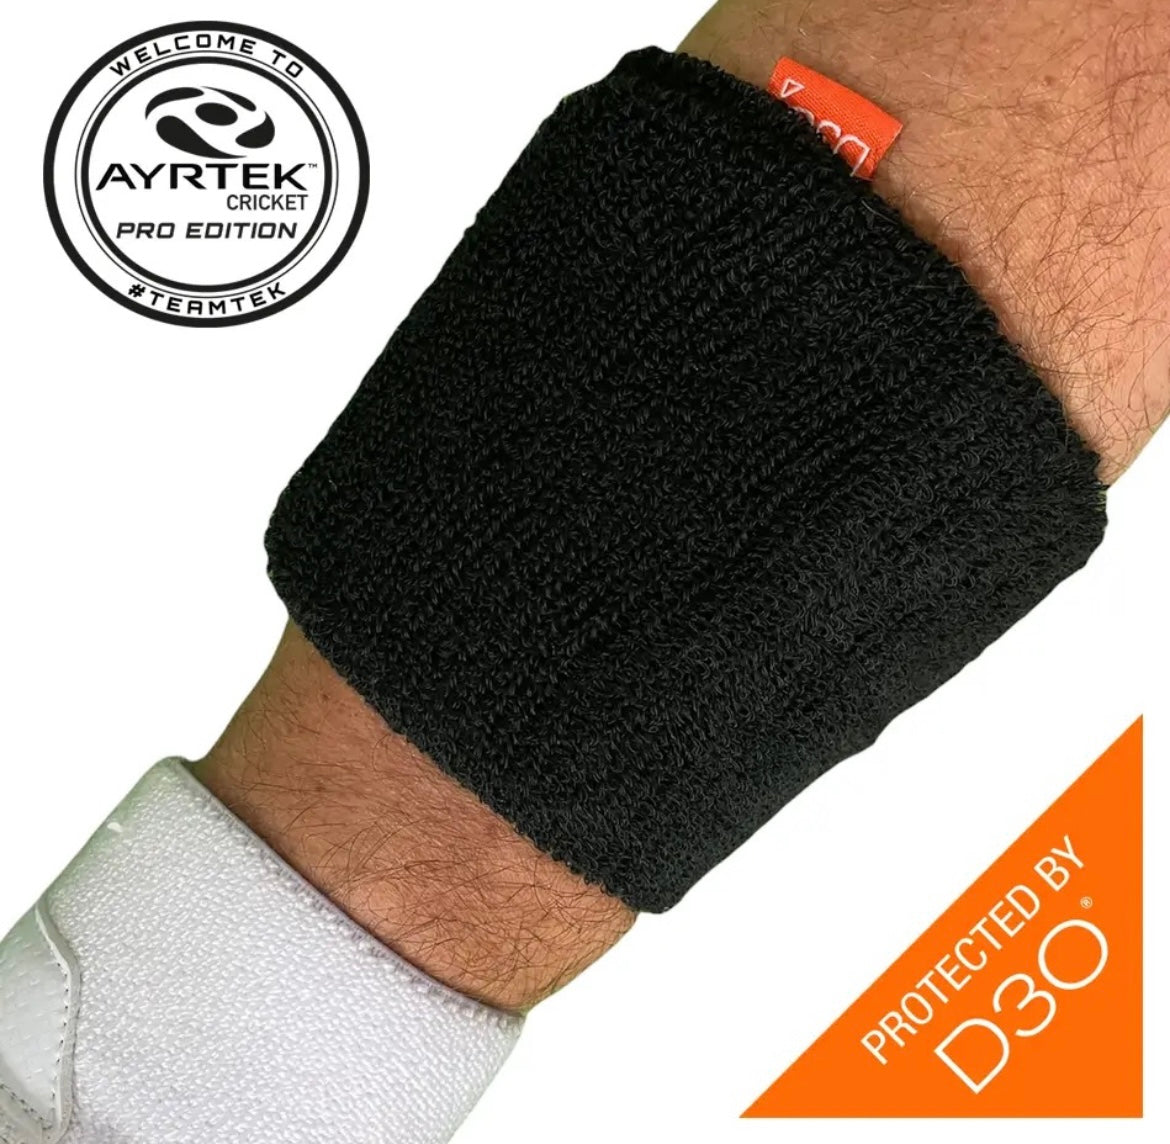 Ayrtek Hybrid Sweatband- Stubby PRO